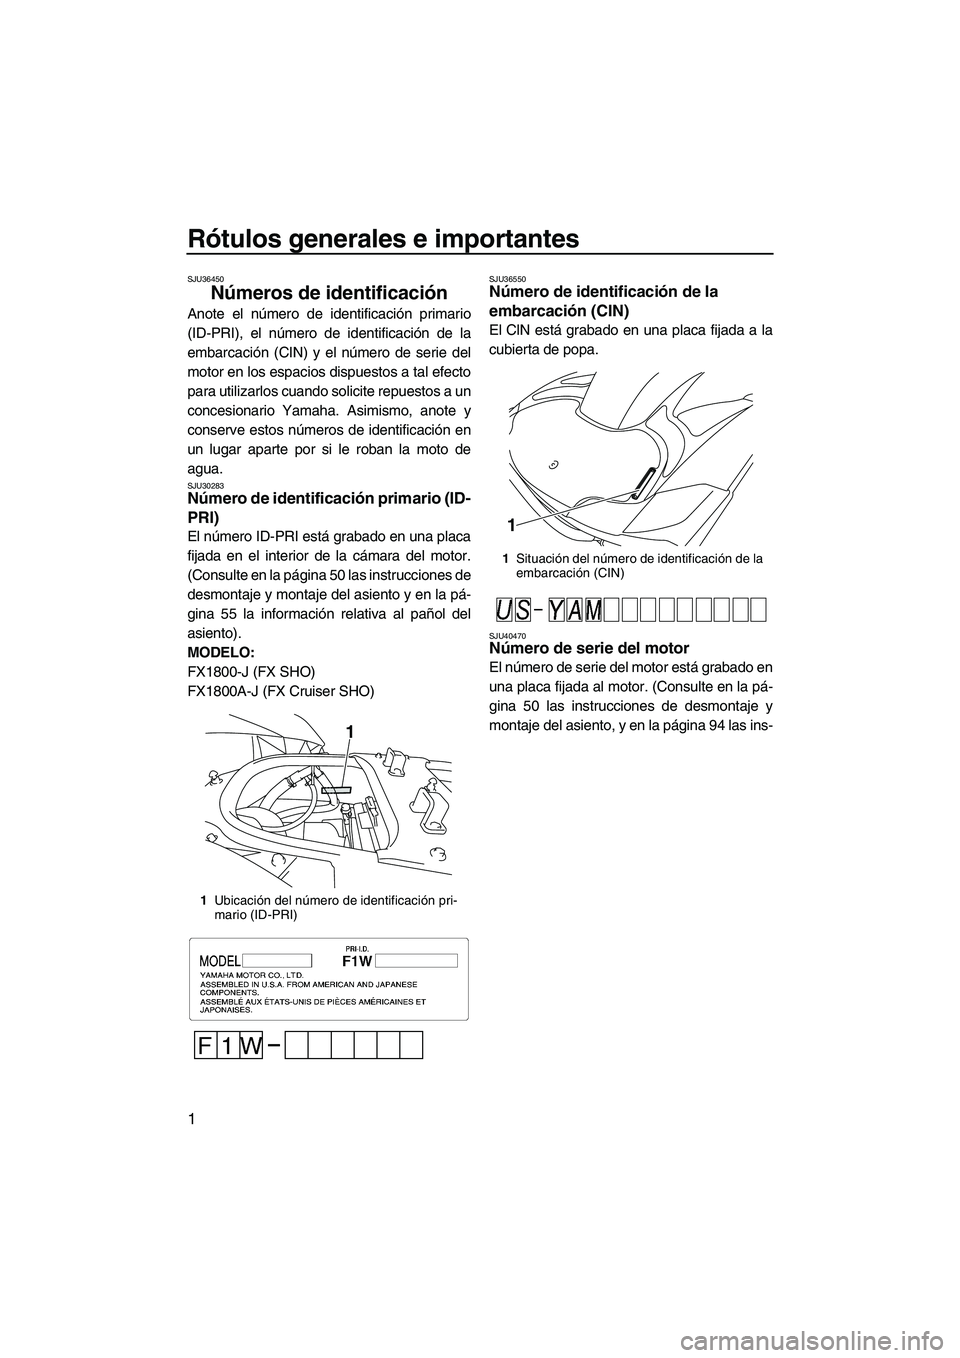 YAMAHA SVHO CRUISER 2010  Manuale de Empleo (in Spanish) Rótulos generales e importantes
1
SJU36450
Números de identificación 
Anote el número de identificación primario
(ID-PRI), el número de identificación de la
embarcación (CIN) y el número de s